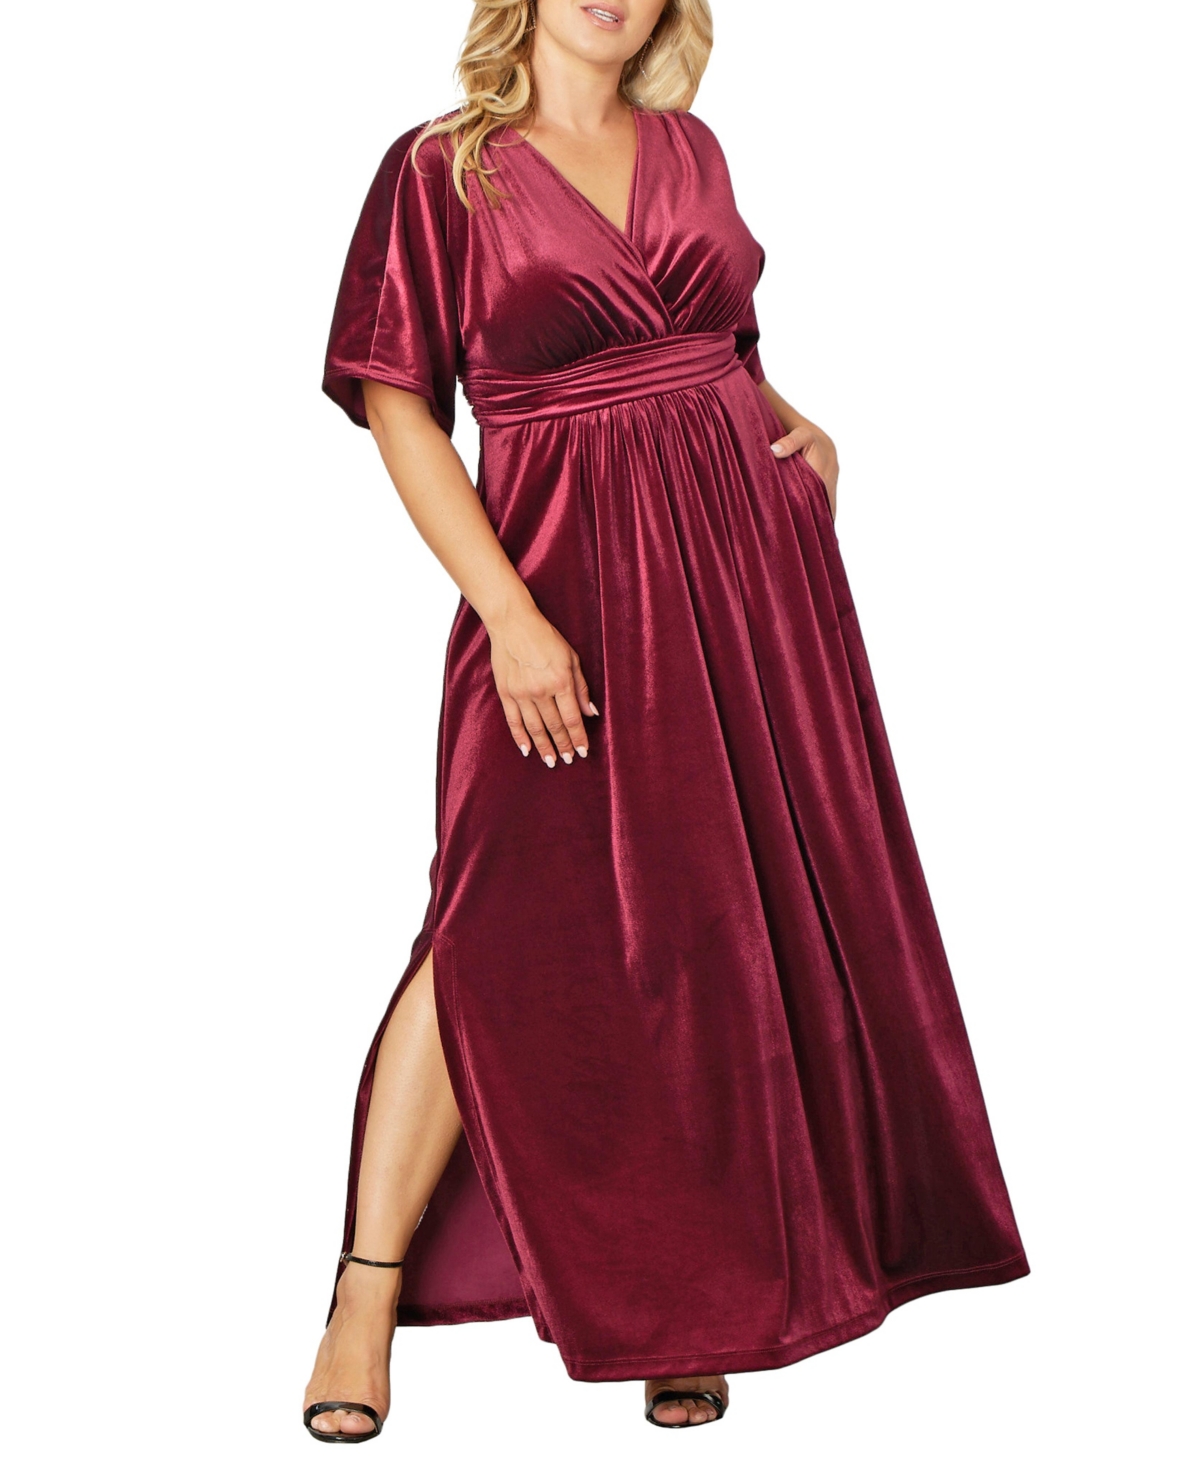 1930s Plus Size Dresses | Art Deco Plus Size Dresses Womens Plus Size Verona Velvet Evening Gown - Pinot noir $188.00 AT vintagedancer.com